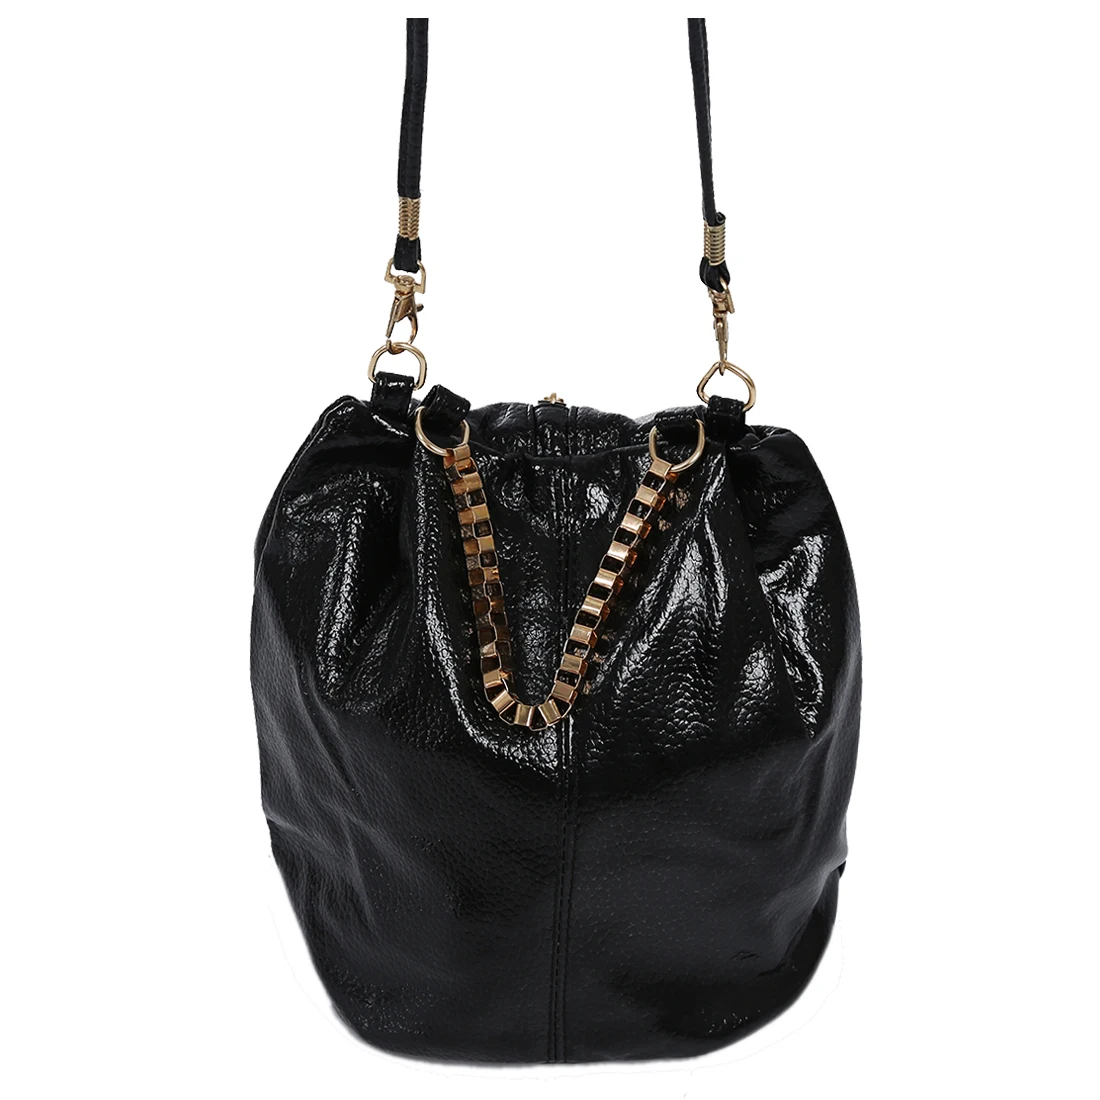 Новый Винтаж дамы плеча сумочку Для женщин сумки девушка сумки Сумка (черный)